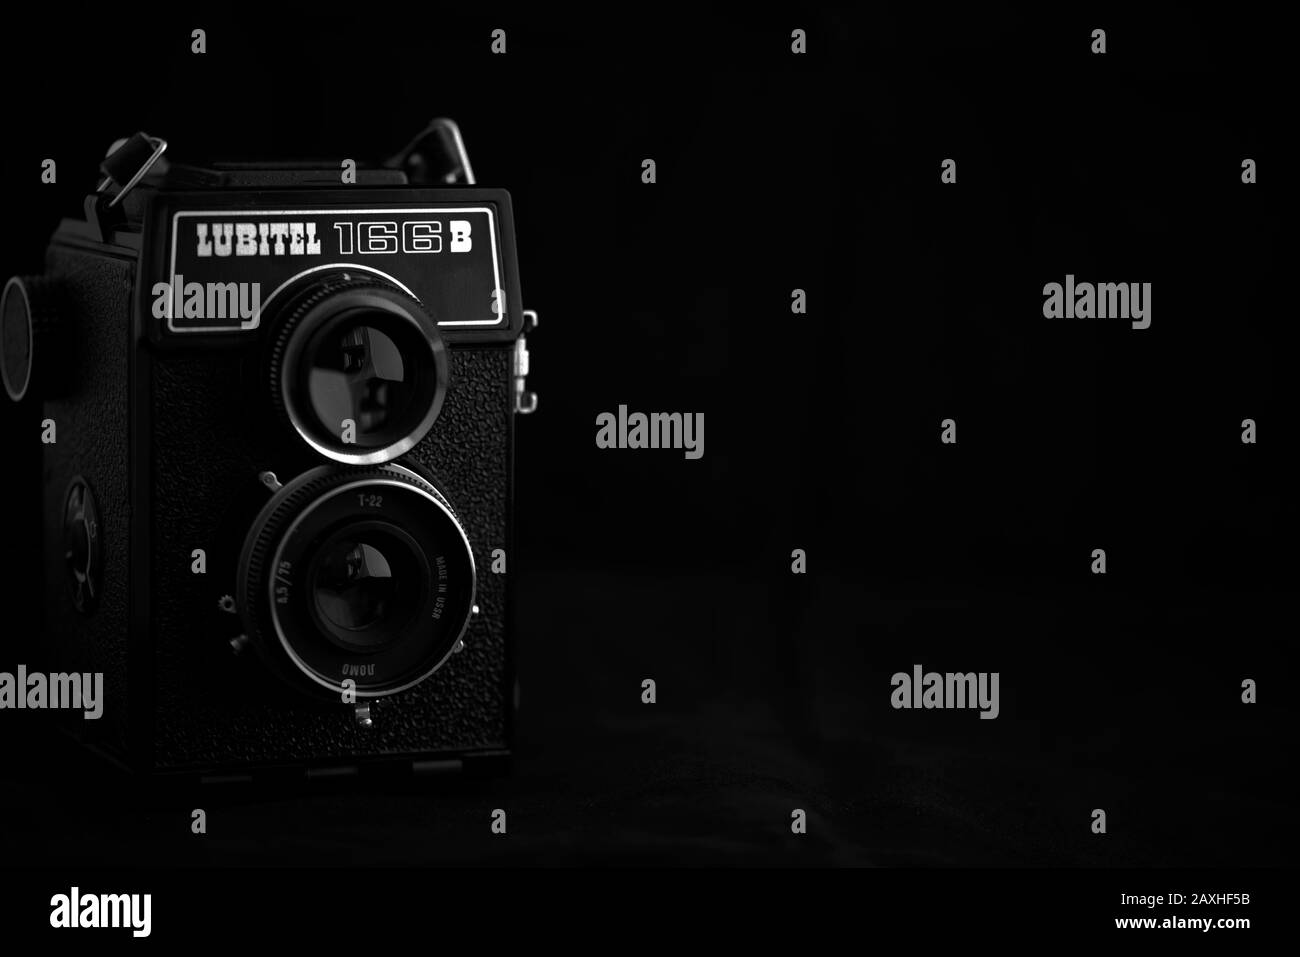 Fotocamera reflex biobiettivo d'epoca, Lubitel 166B, su sfondo scuro. Foto Stock